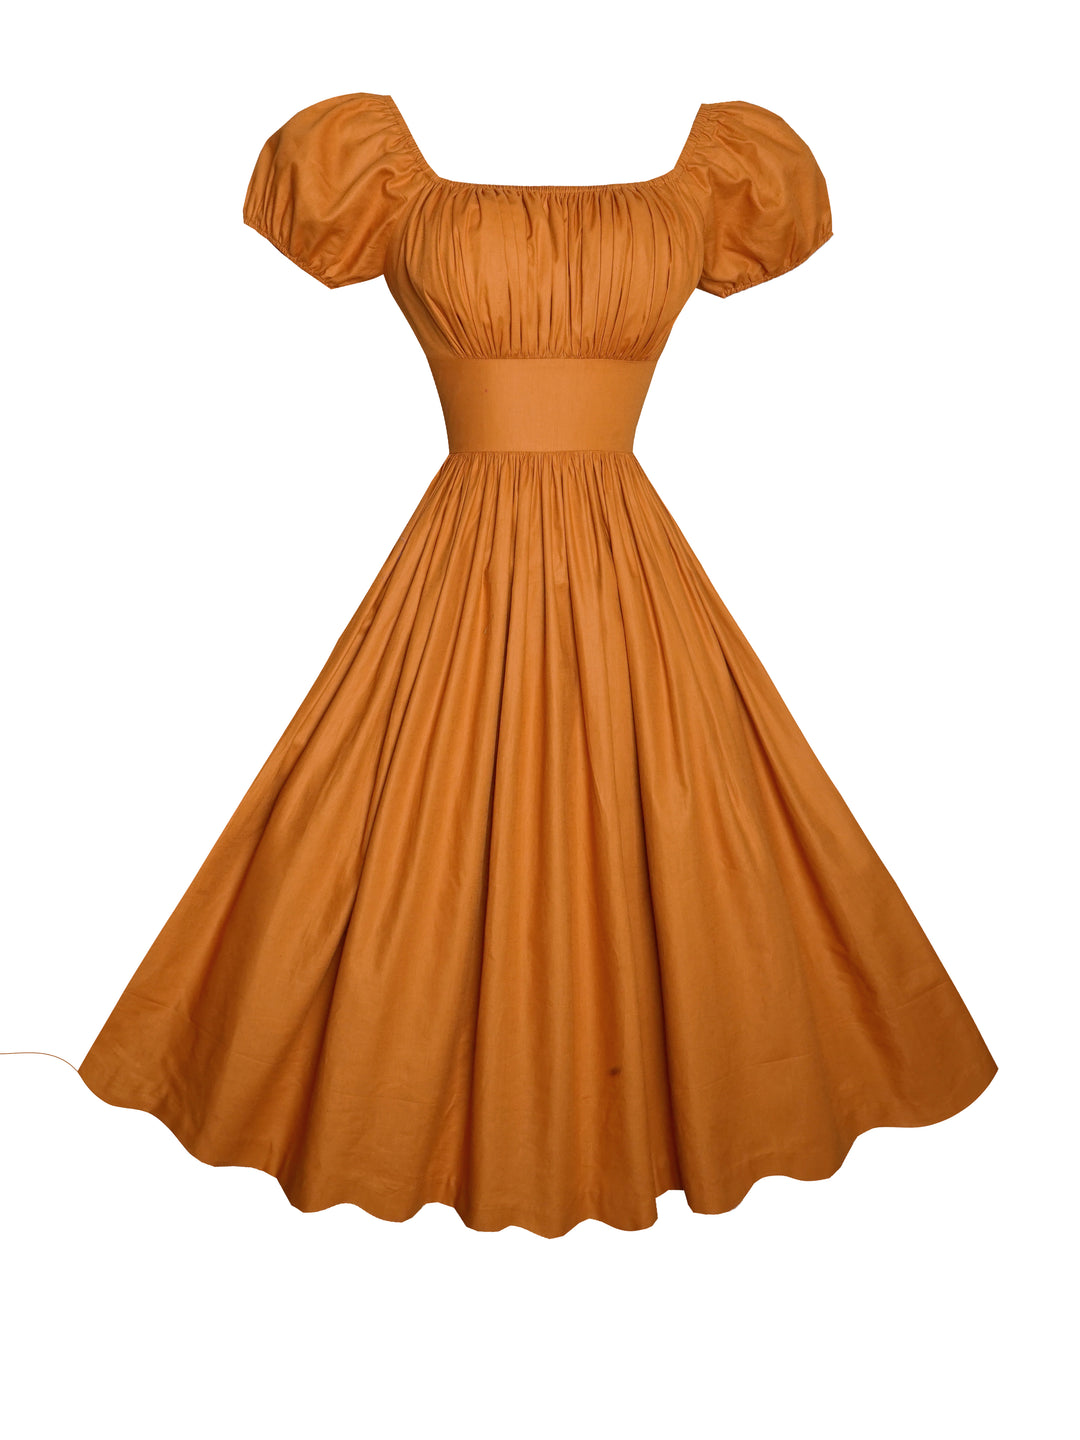 MTO - Loretta Dress in Terra Cotta Brown Cotton